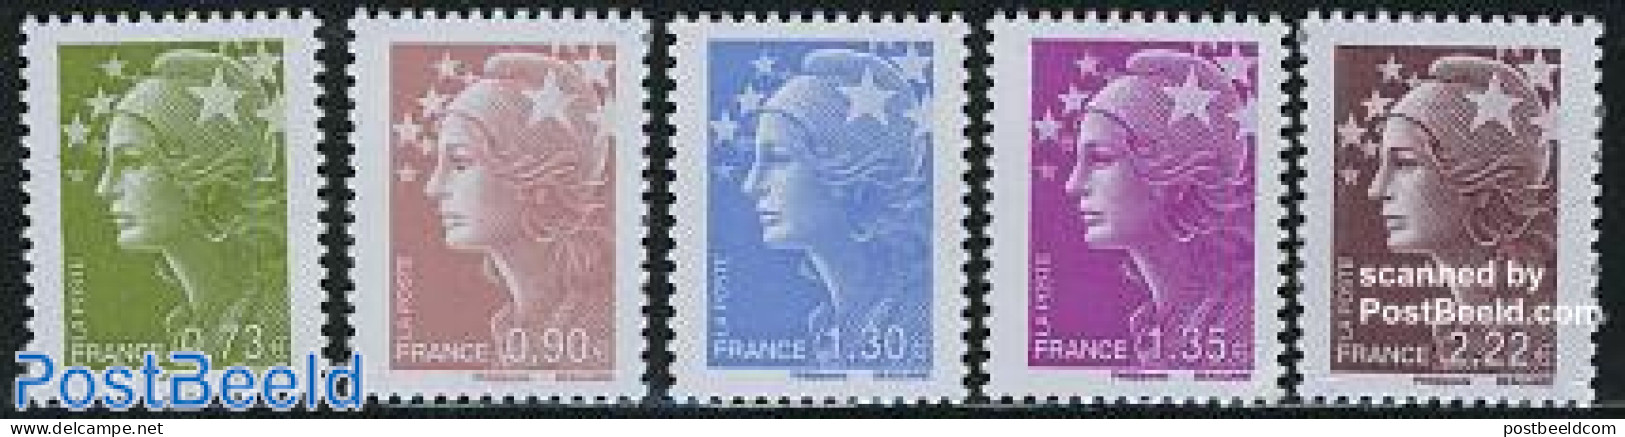 France 2009 Definitives, Marianne 5v, Mint NH - Unused Stamps